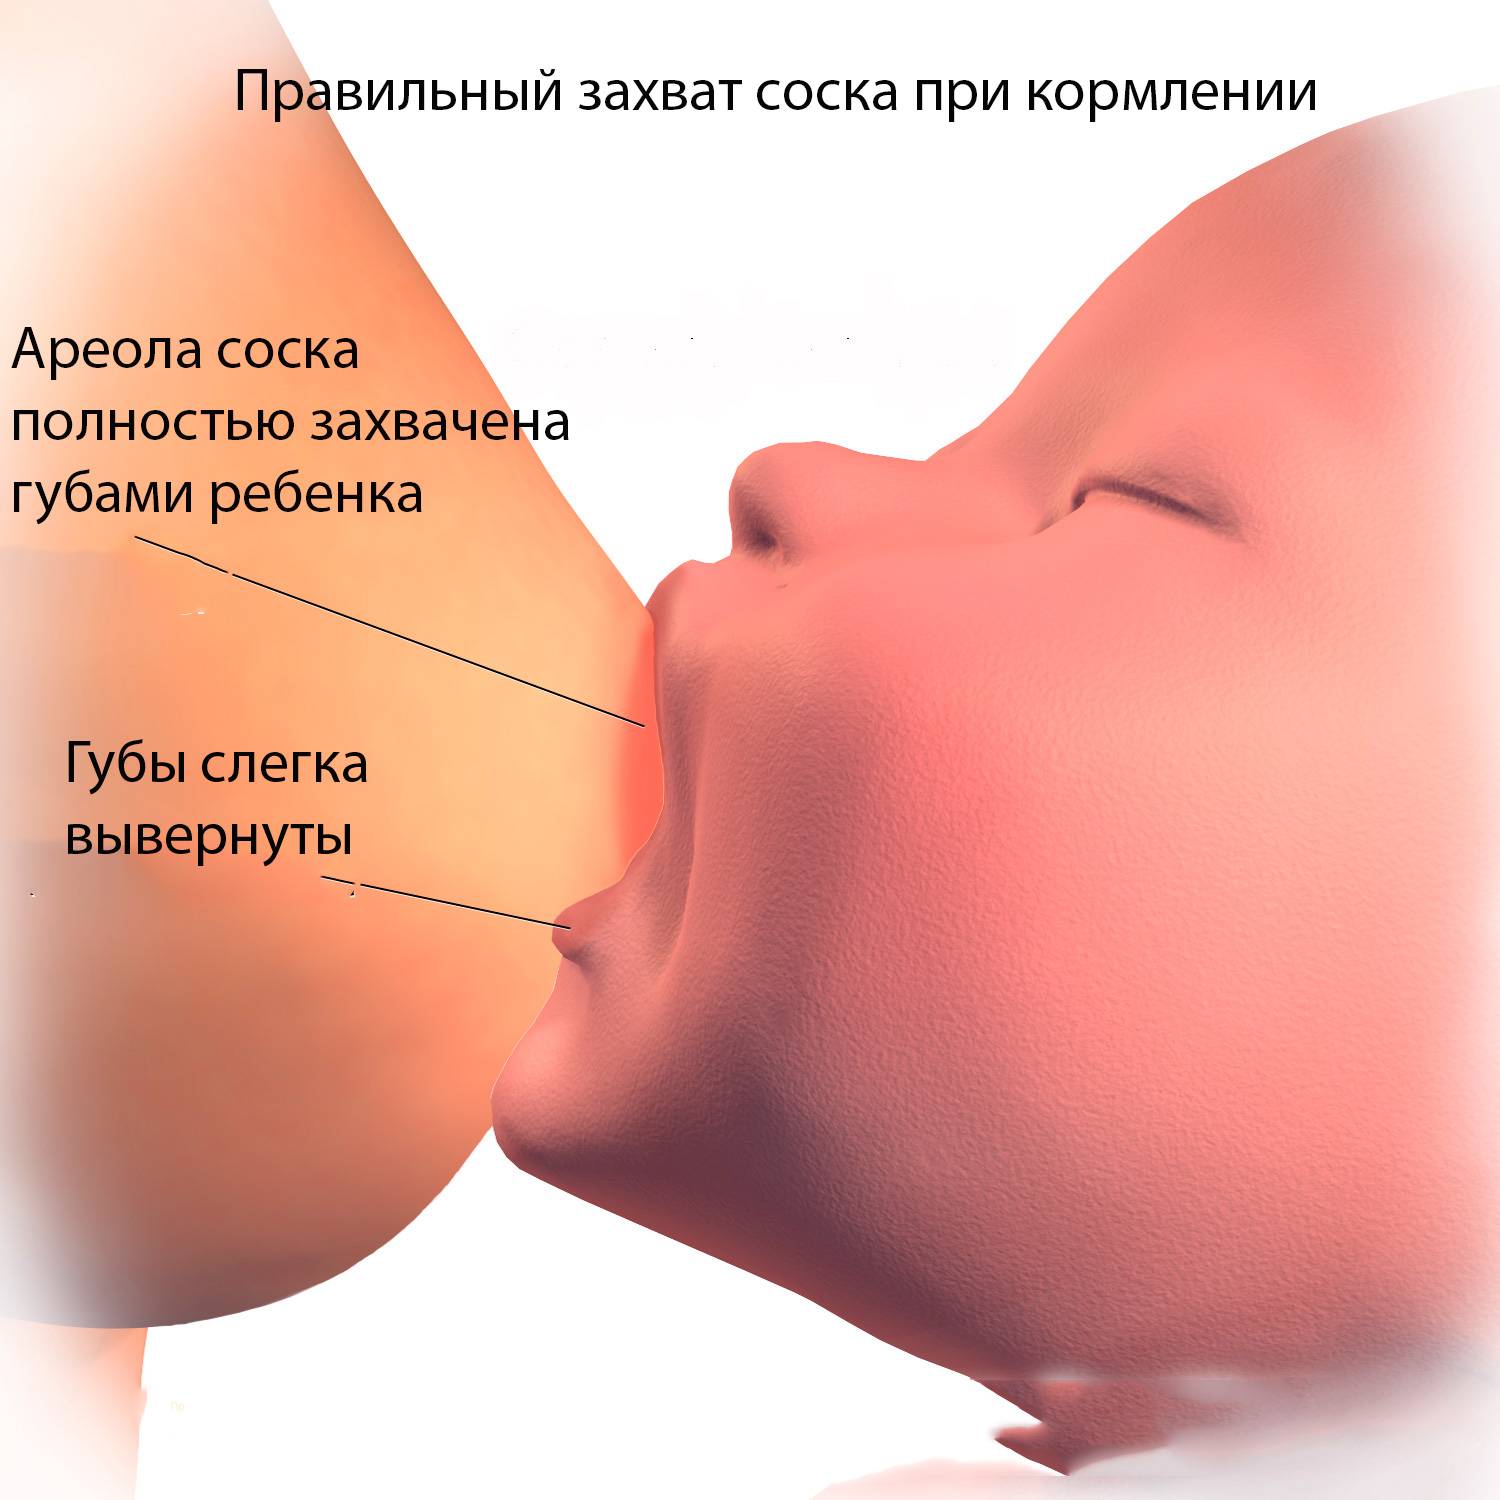 Грудное вскармливание: польза для новорожденного, правила и ограничения лактации